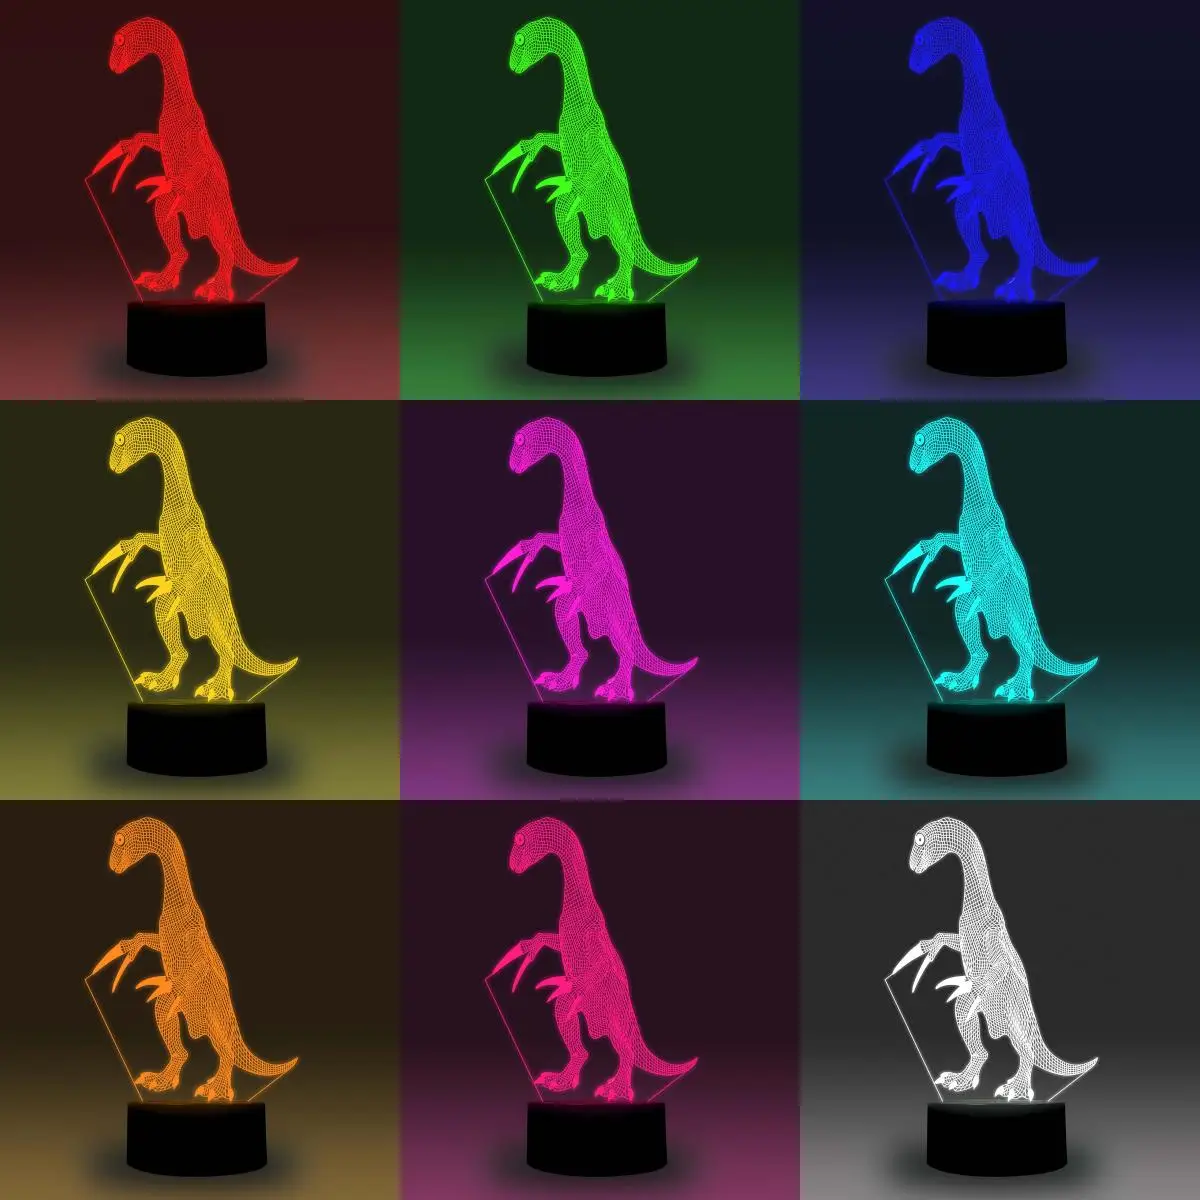 Niteapps 3D в натуральную величину велоцираптор Динозавр RGB светодиодный ночной Светильник стол иллюзия Лампа праздничный подарок на день